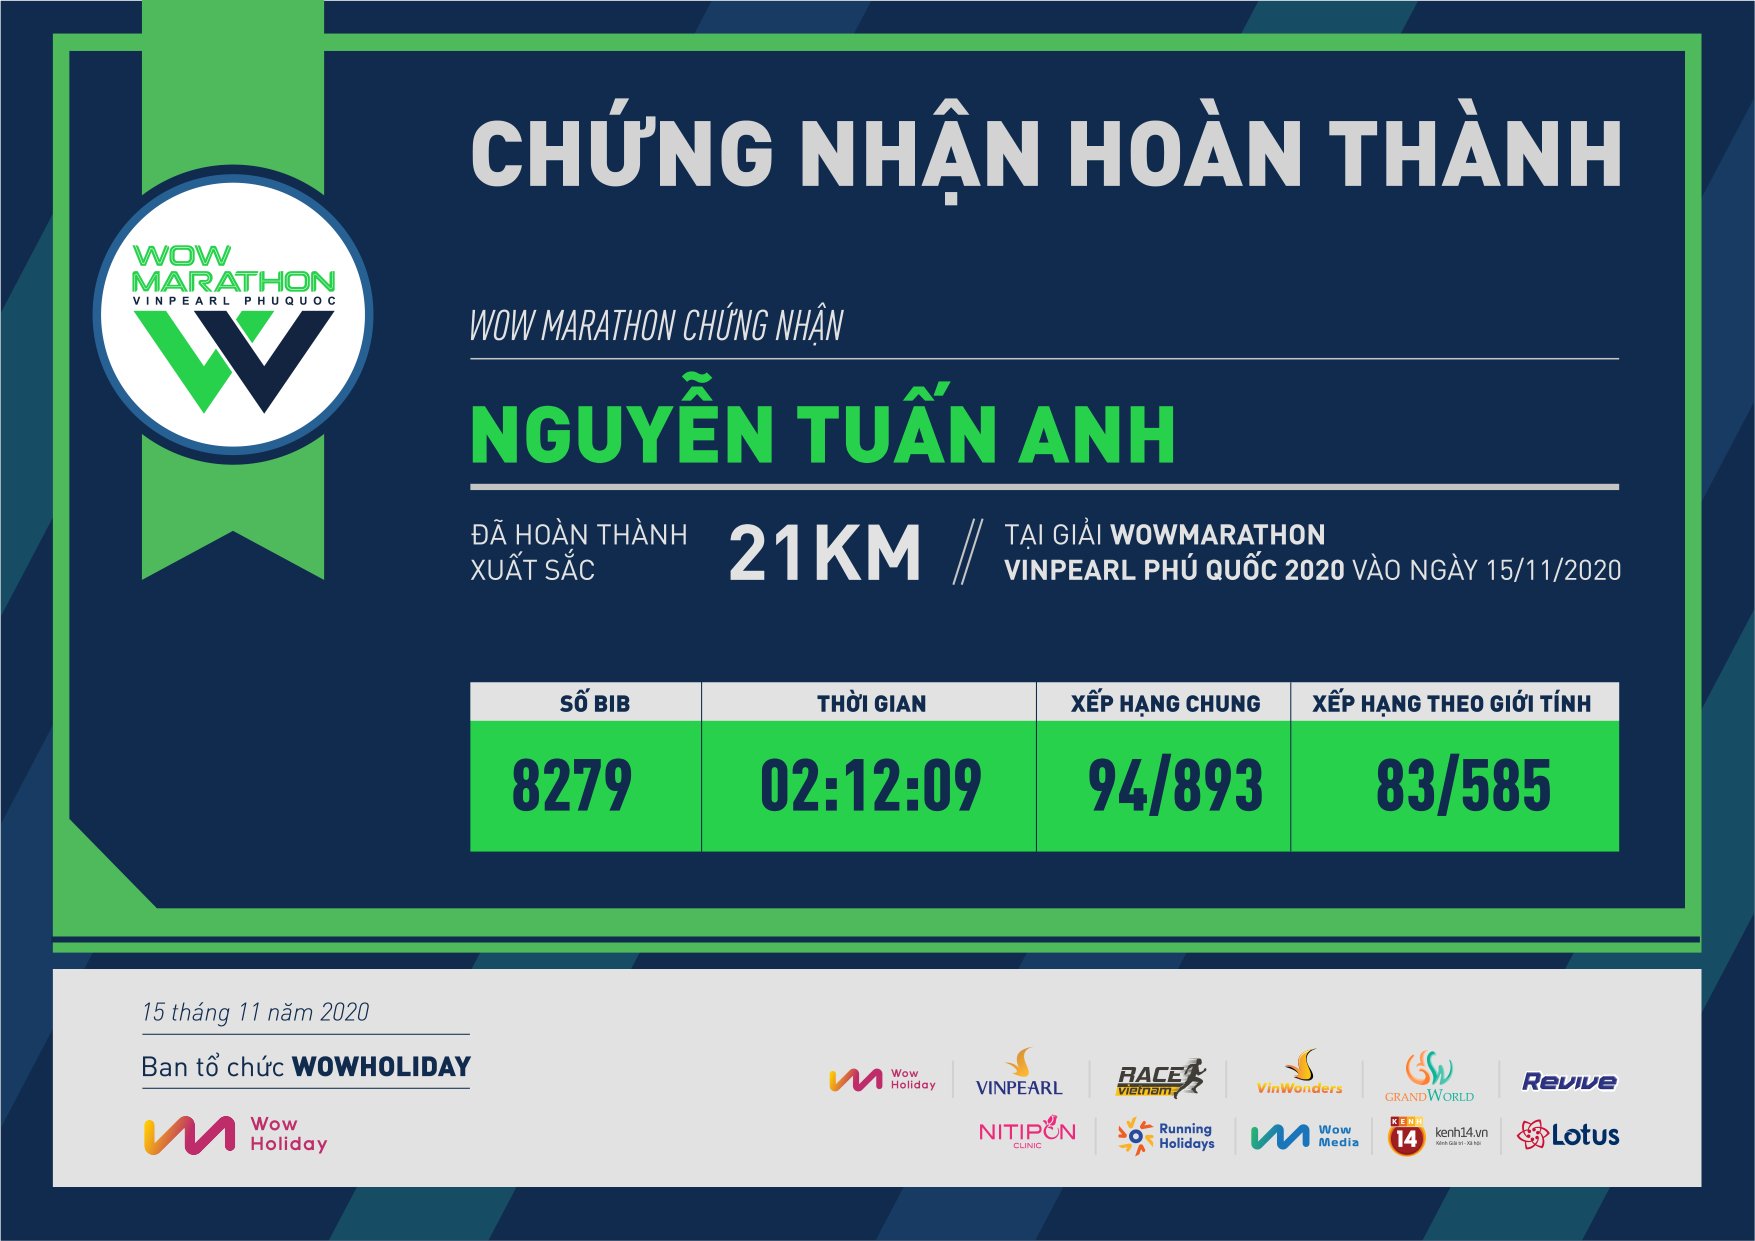 8279 - Nguyễn Tuấn Anh